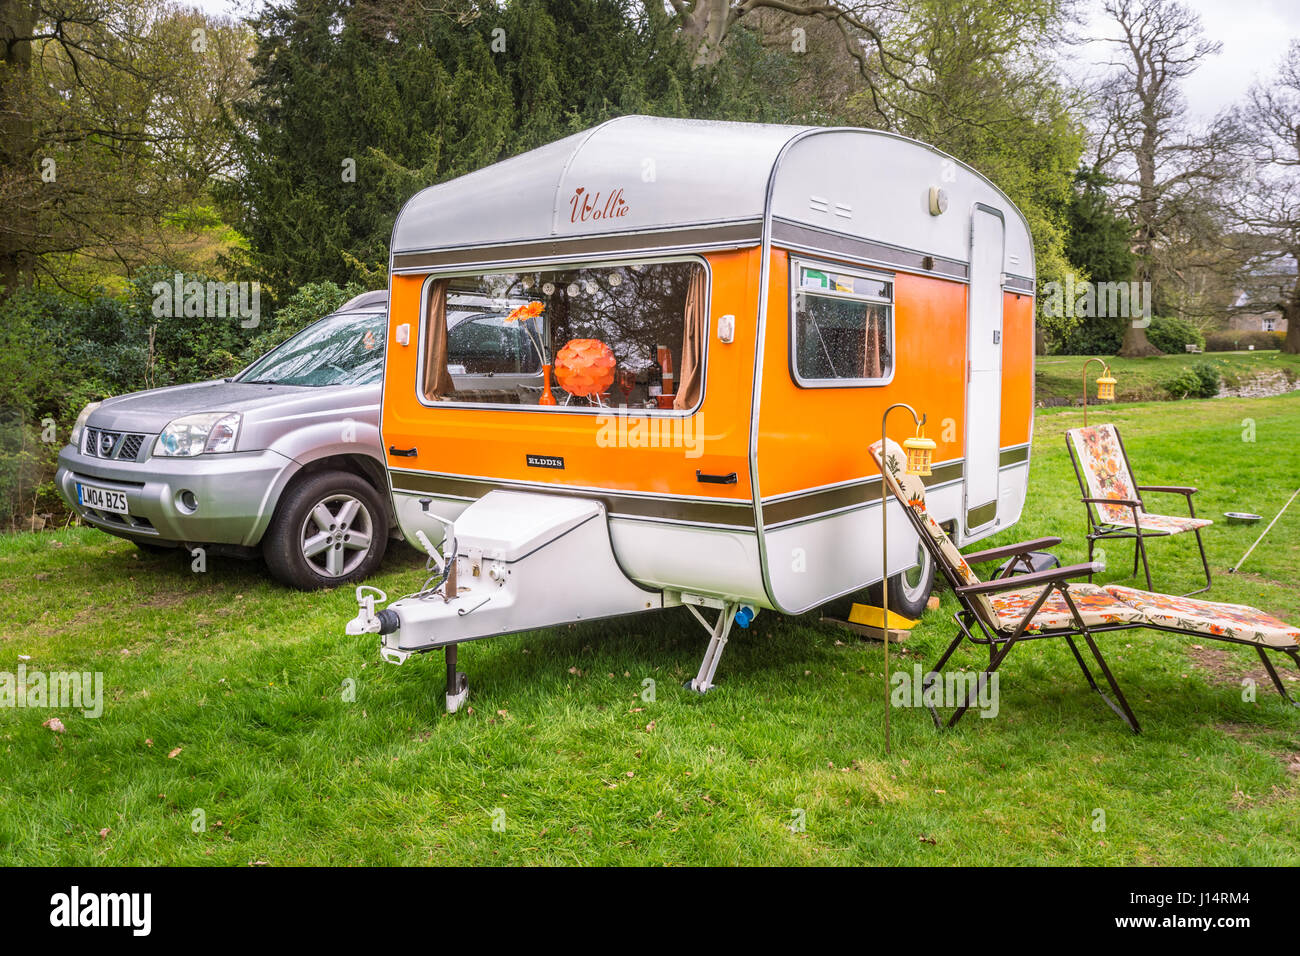 Typische alte Caravan oder Wohnwagen in einem Park, Großbritannien, im Frühlingsurlaub Stockfoto